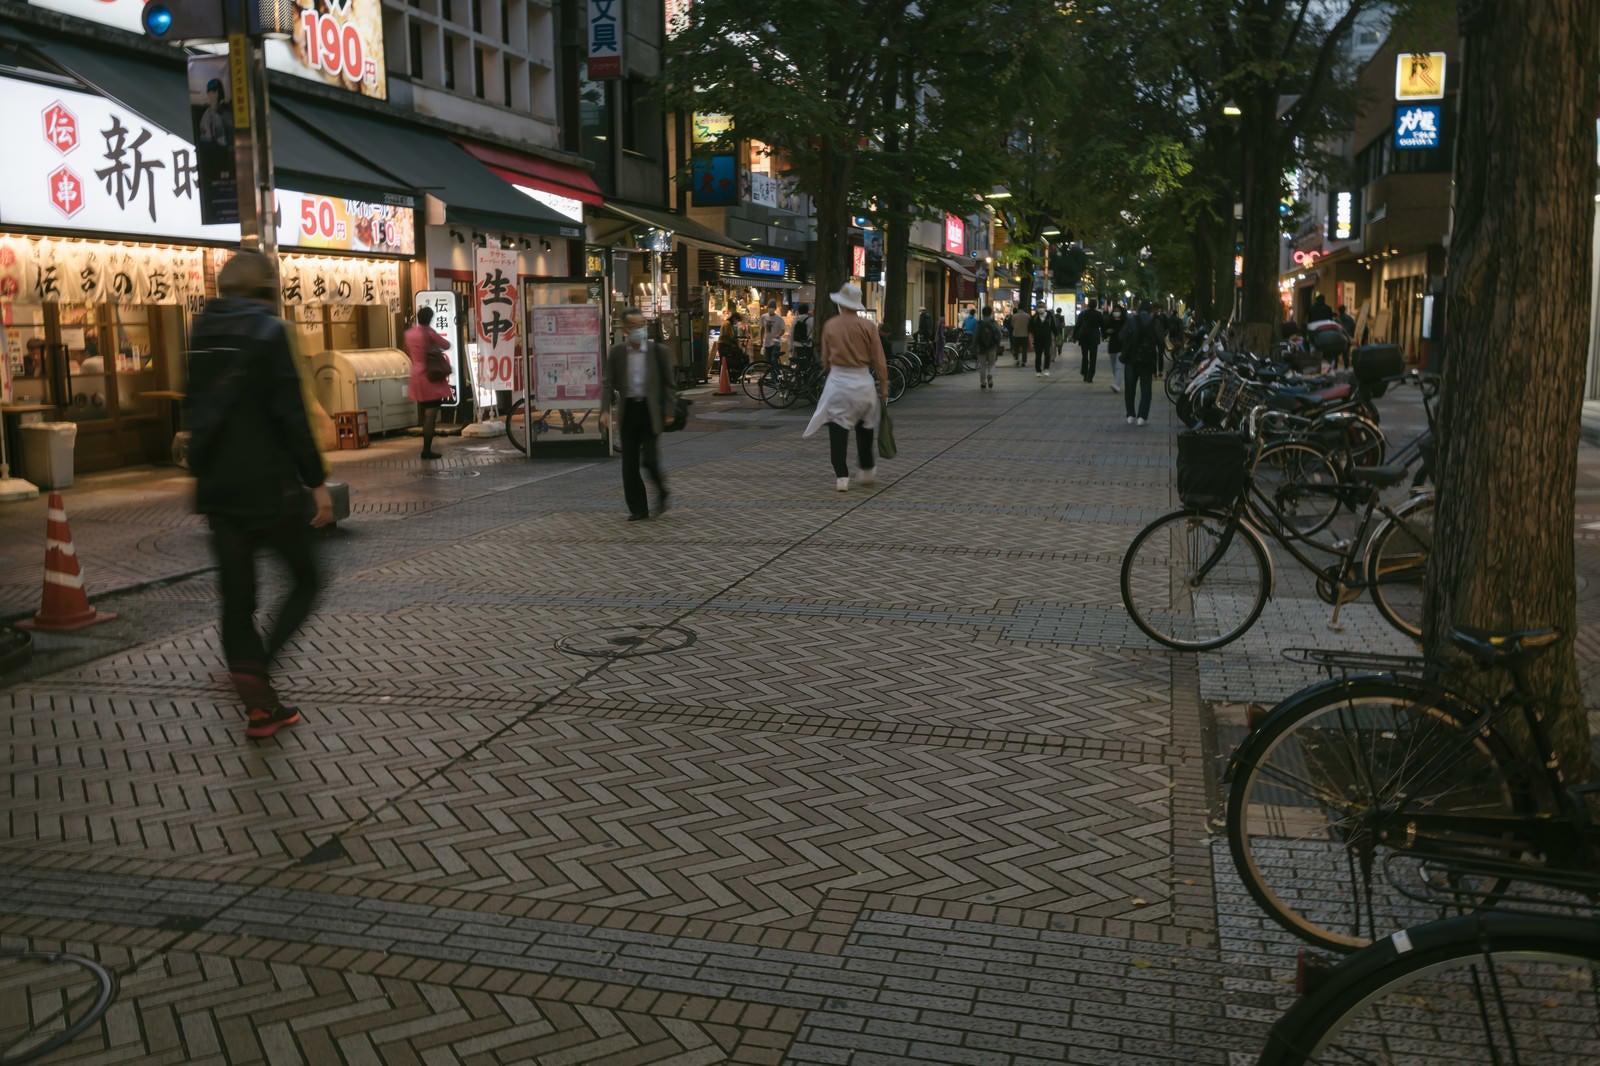 「イセザキモールの歩道に停まる自転車と行き交う人々」の写真